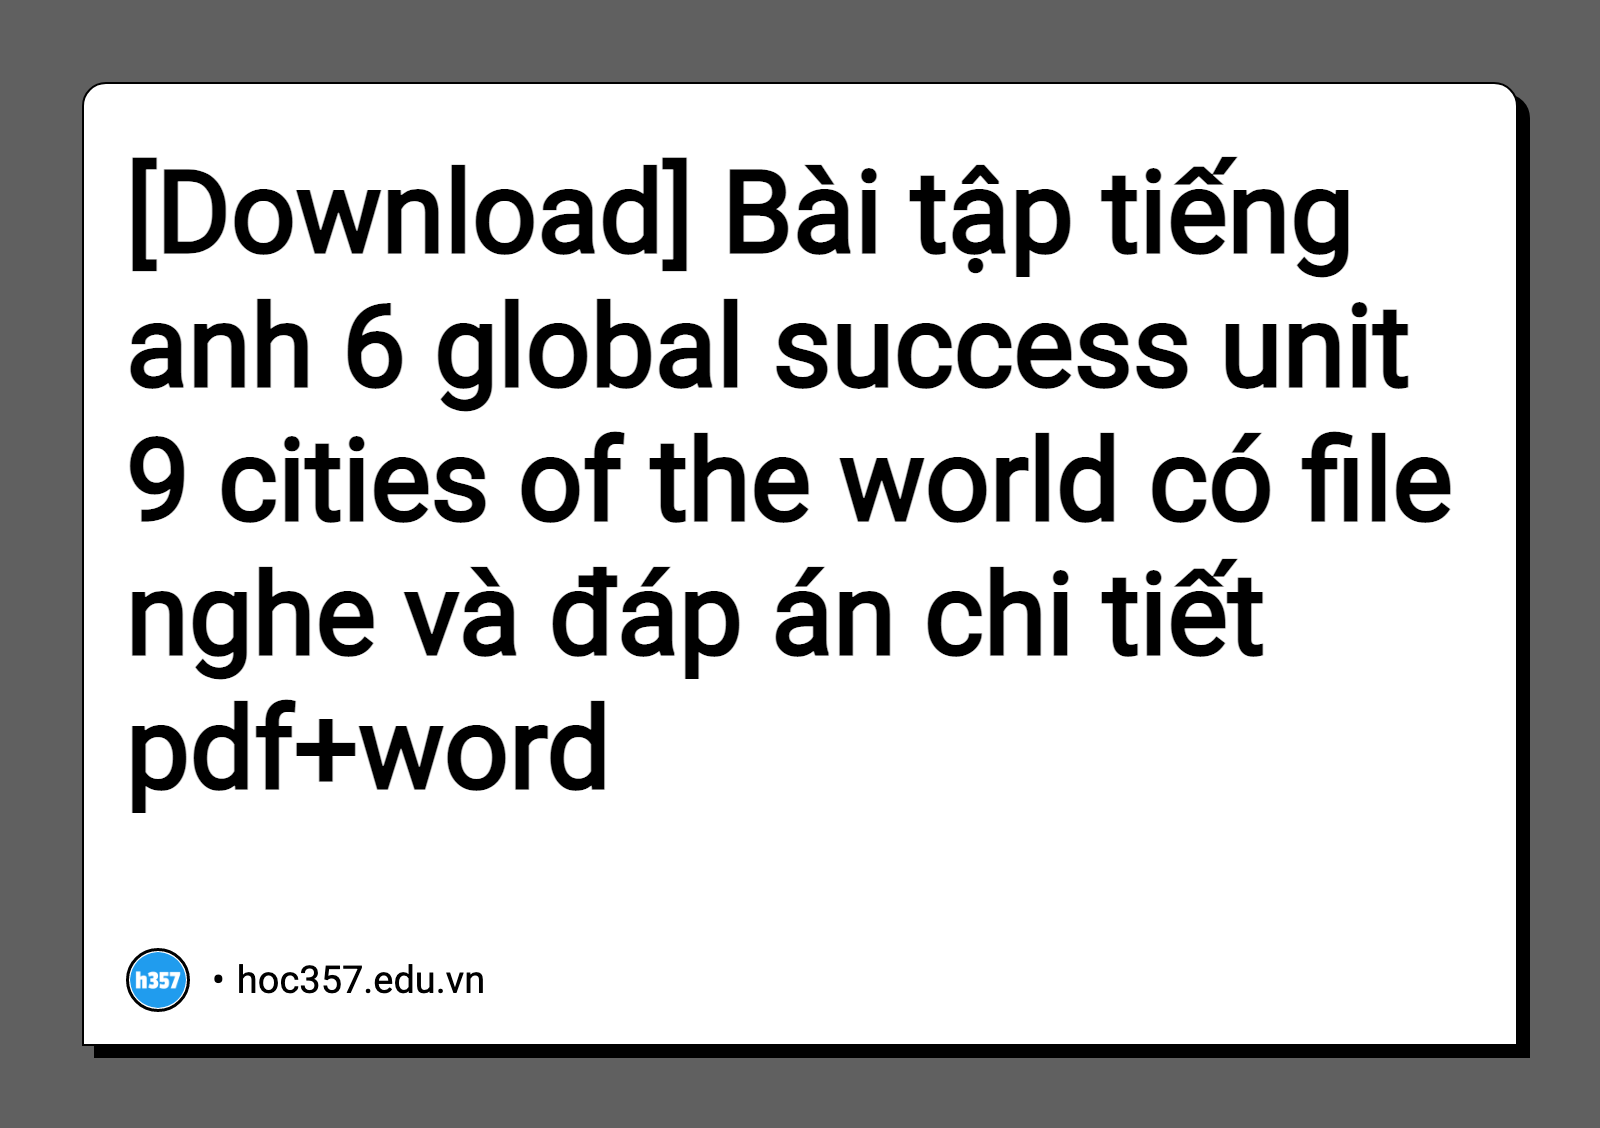 Hình minh họa Bài tập tiếng anh 6 global success unit 9 cities of the world có file nghe và đáp án chi tiết